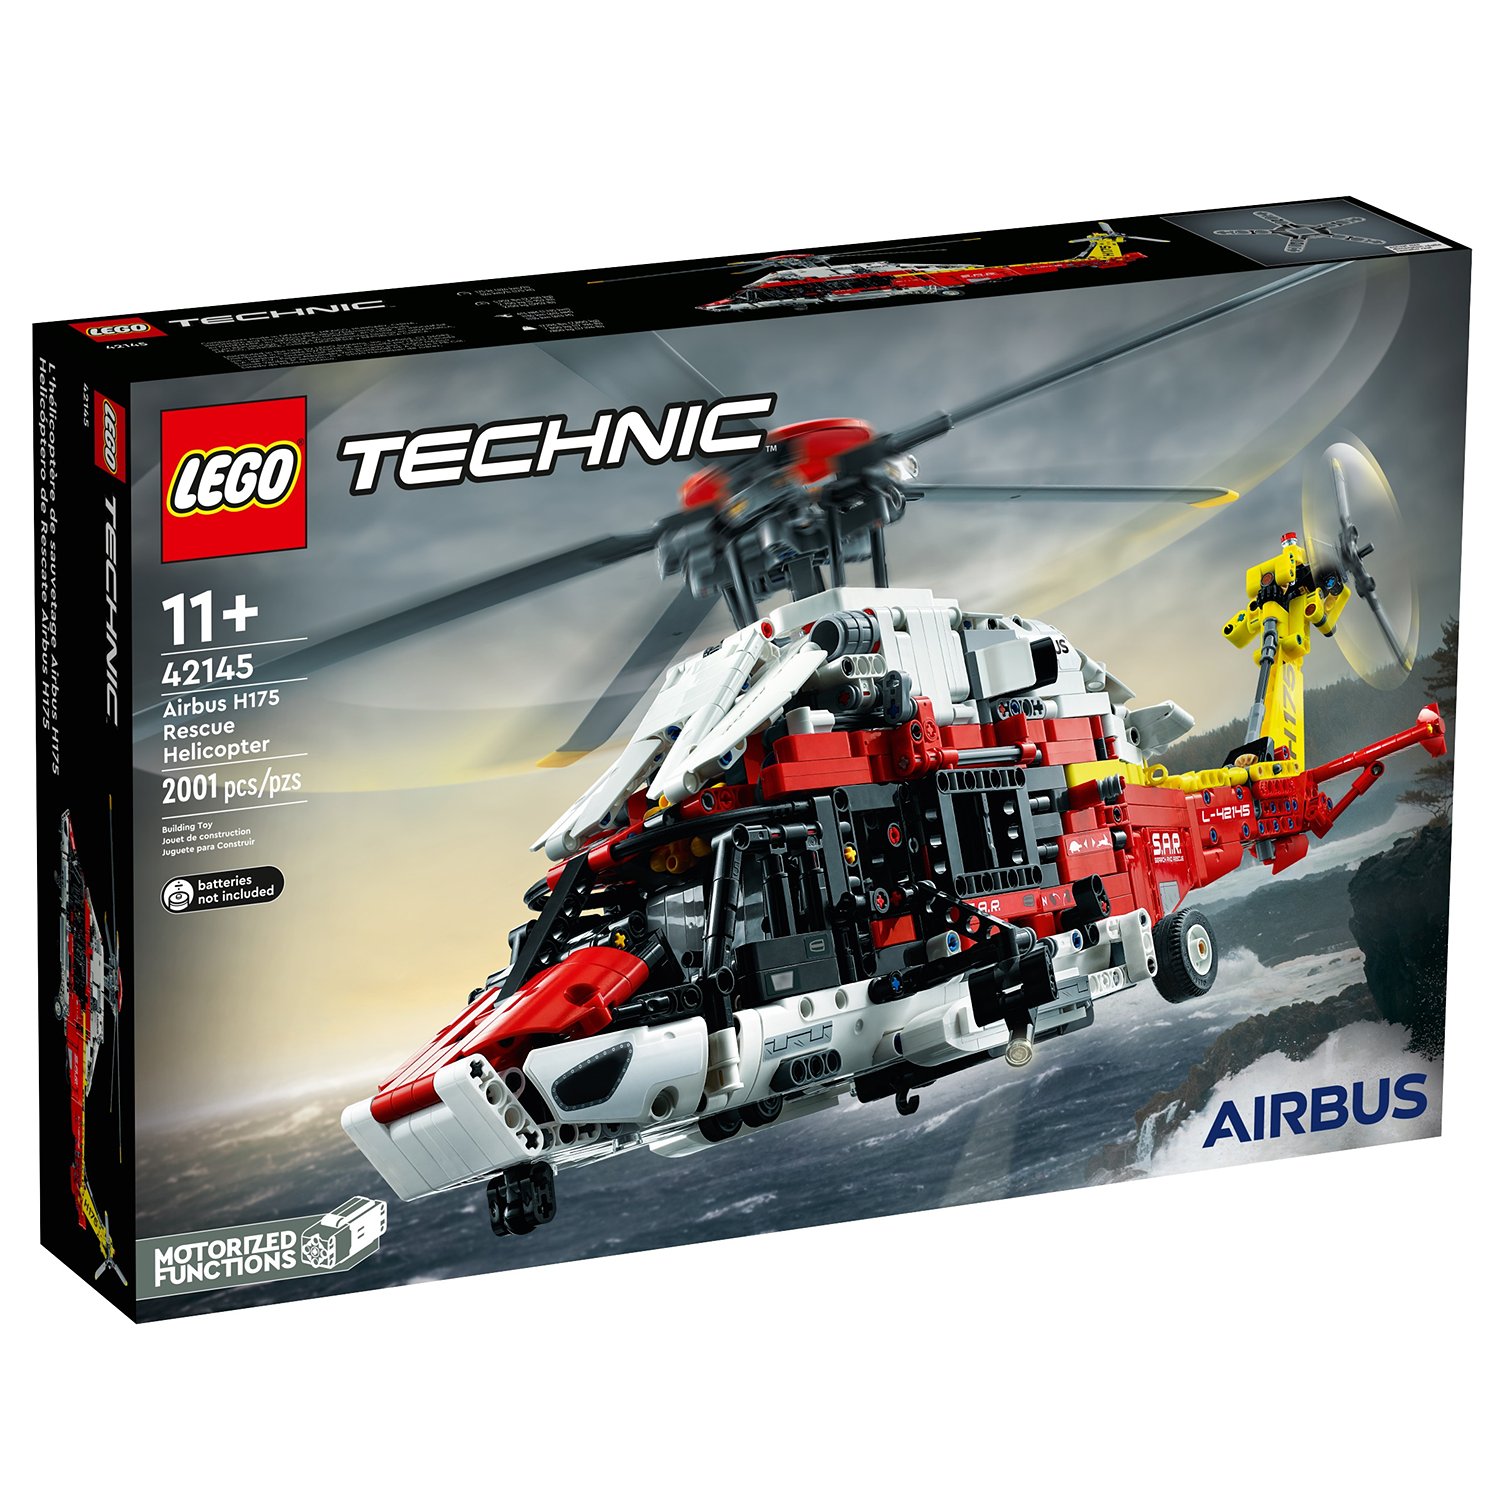 Конструктор LEGO Technic Спасательный вертолет Airbus H175, 2001 деталь, 42145 drift вертолет fire and rescque helicopter 1 16